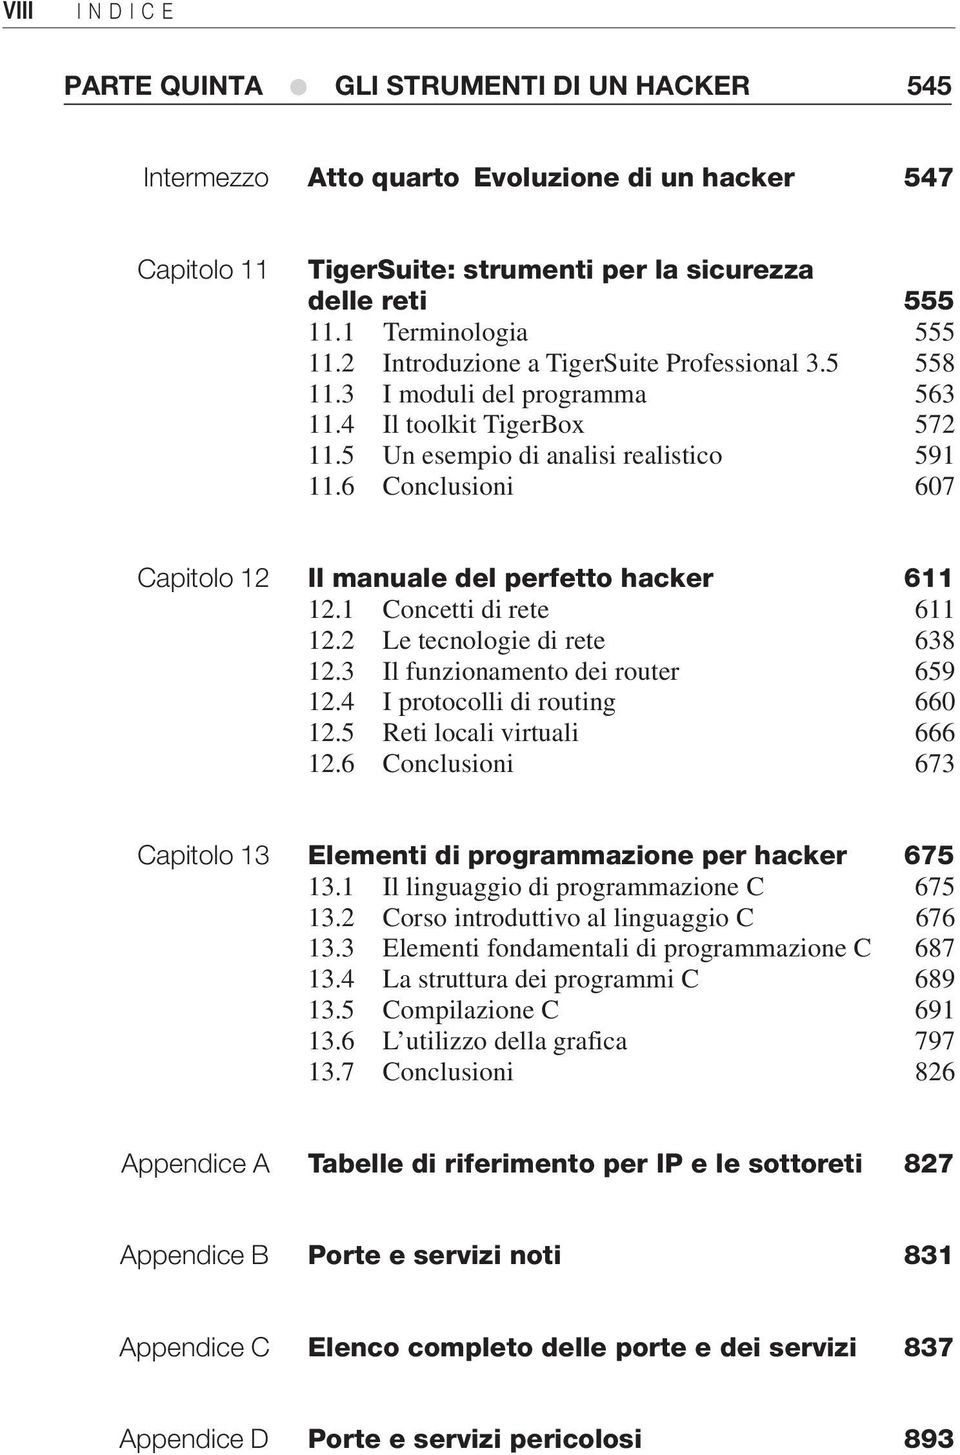 6 Conclusioni 607 Capitolo 12 Il manuale del perfetto hacker 611 12.1 Concetti di rete 611 12.2 Le tecnologie di rete 638 12.3 Il funzionamento dei router 659 12.4 I protocolli di routing 660 12.